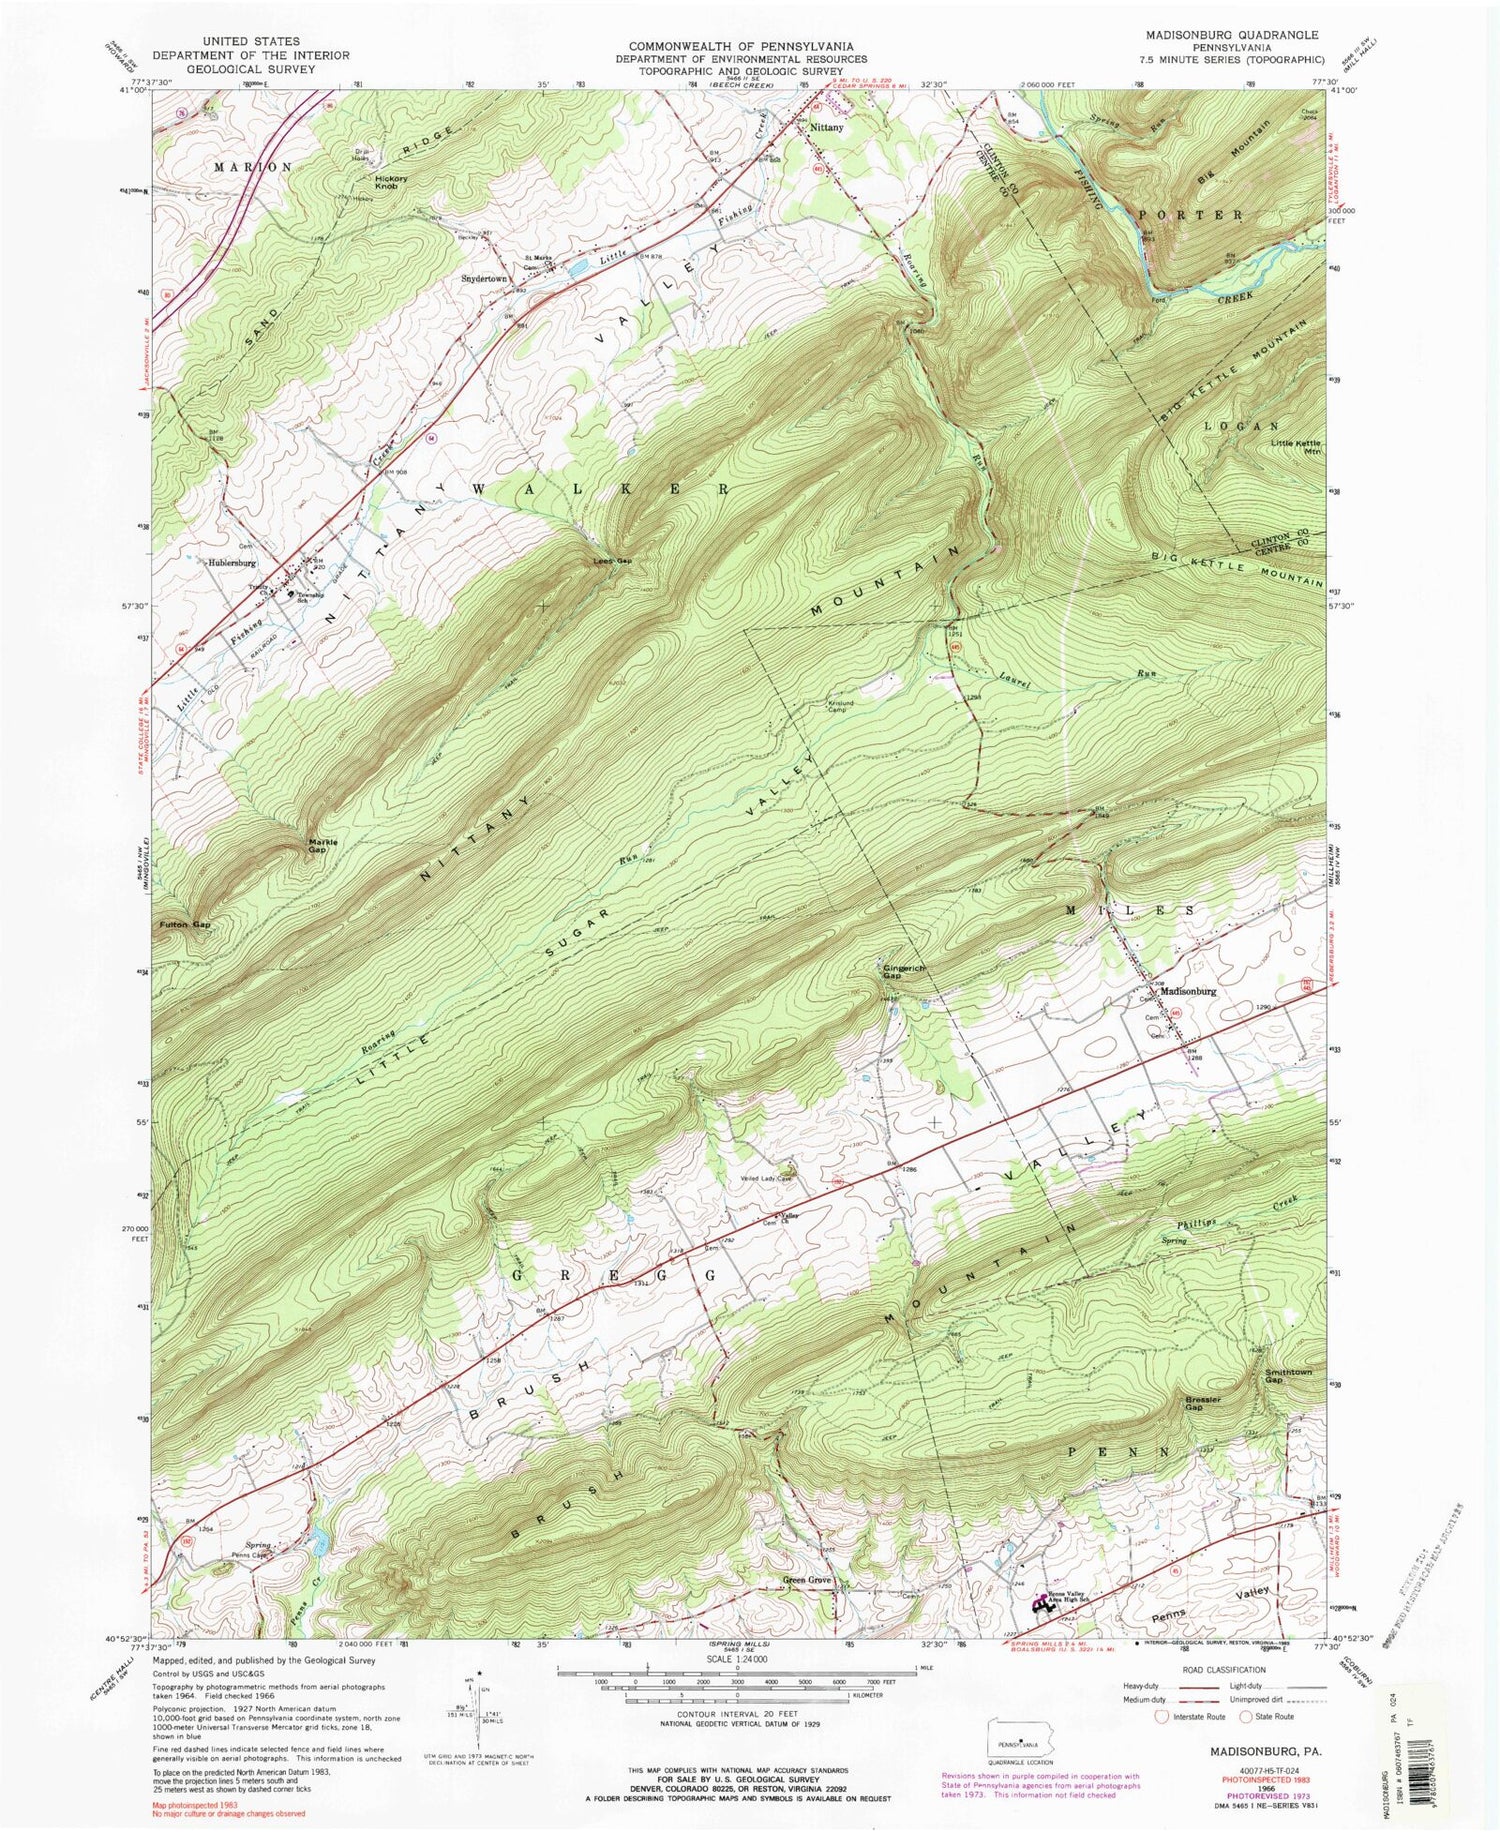 Classic USGS Madisonburg Pennsylvania 7.5'x7.5' Topo Map Image